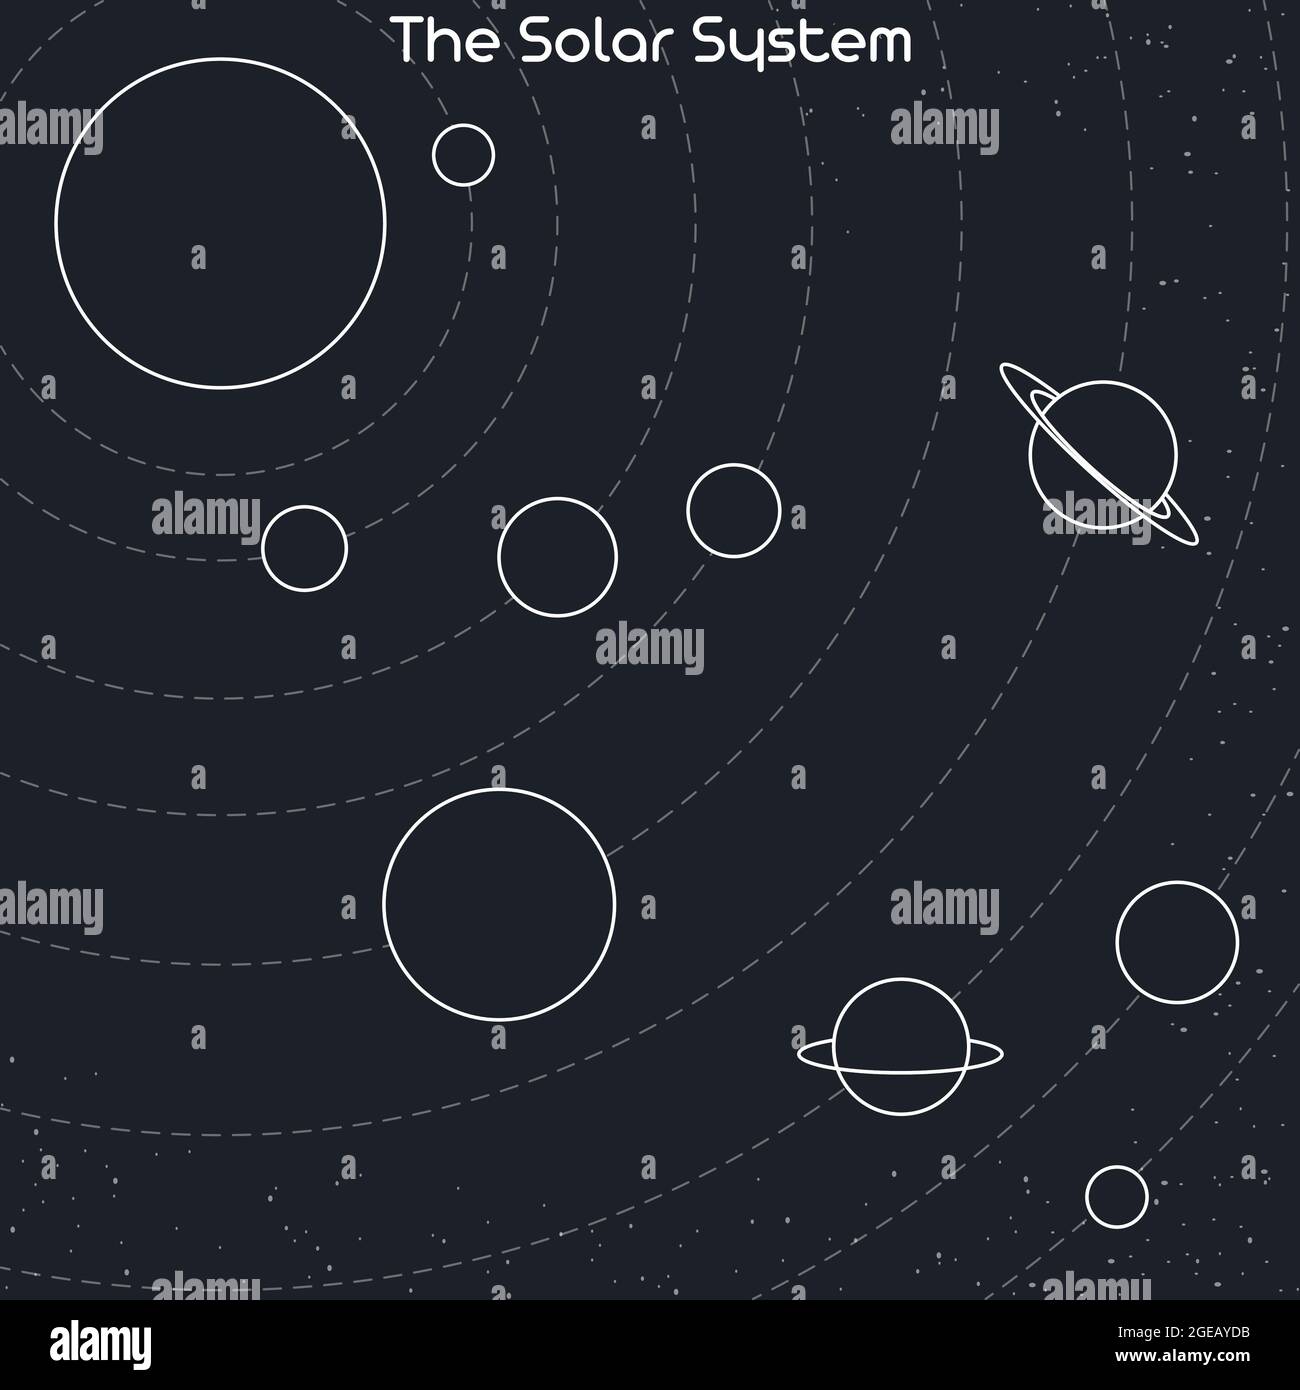 Illustrazione dei pianeti del sistema solare e delle loro orbite intorno al sole. Contorno astratto pianeti vettoriali e stelle isolate su sfondo grigio Illustrazione Vettoriale